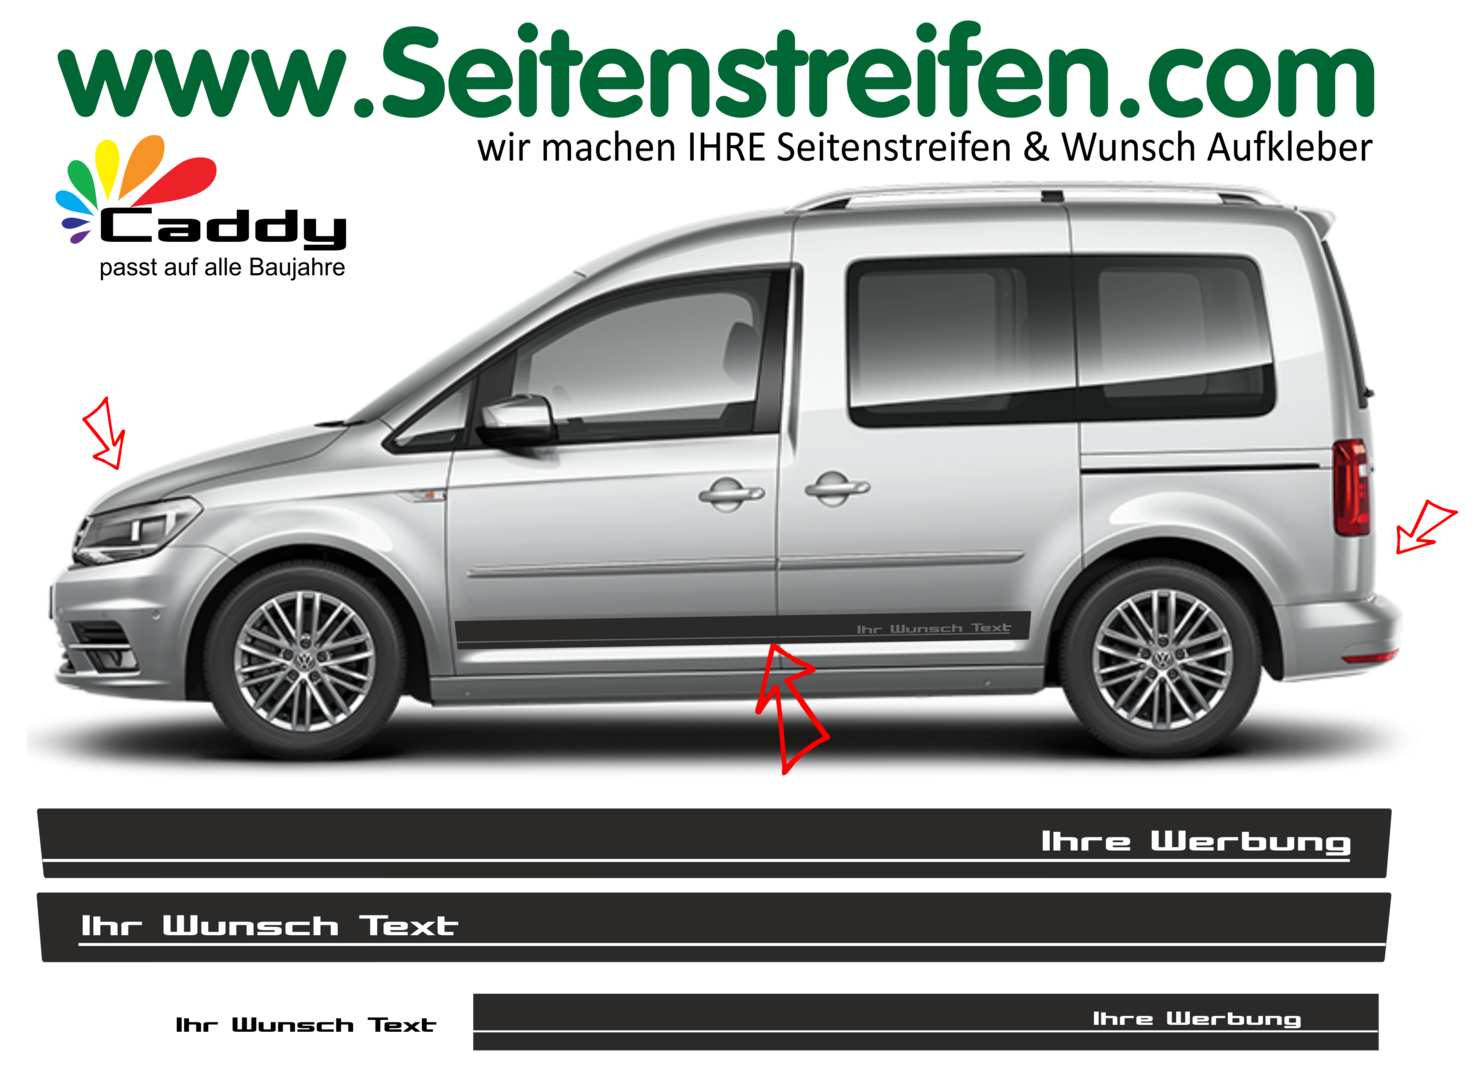 VW Caddy Wunsch Text - Ihre Werbung Dekor Seitenstreifen Aufkleber Komplett Set - Art.Nr: 1076